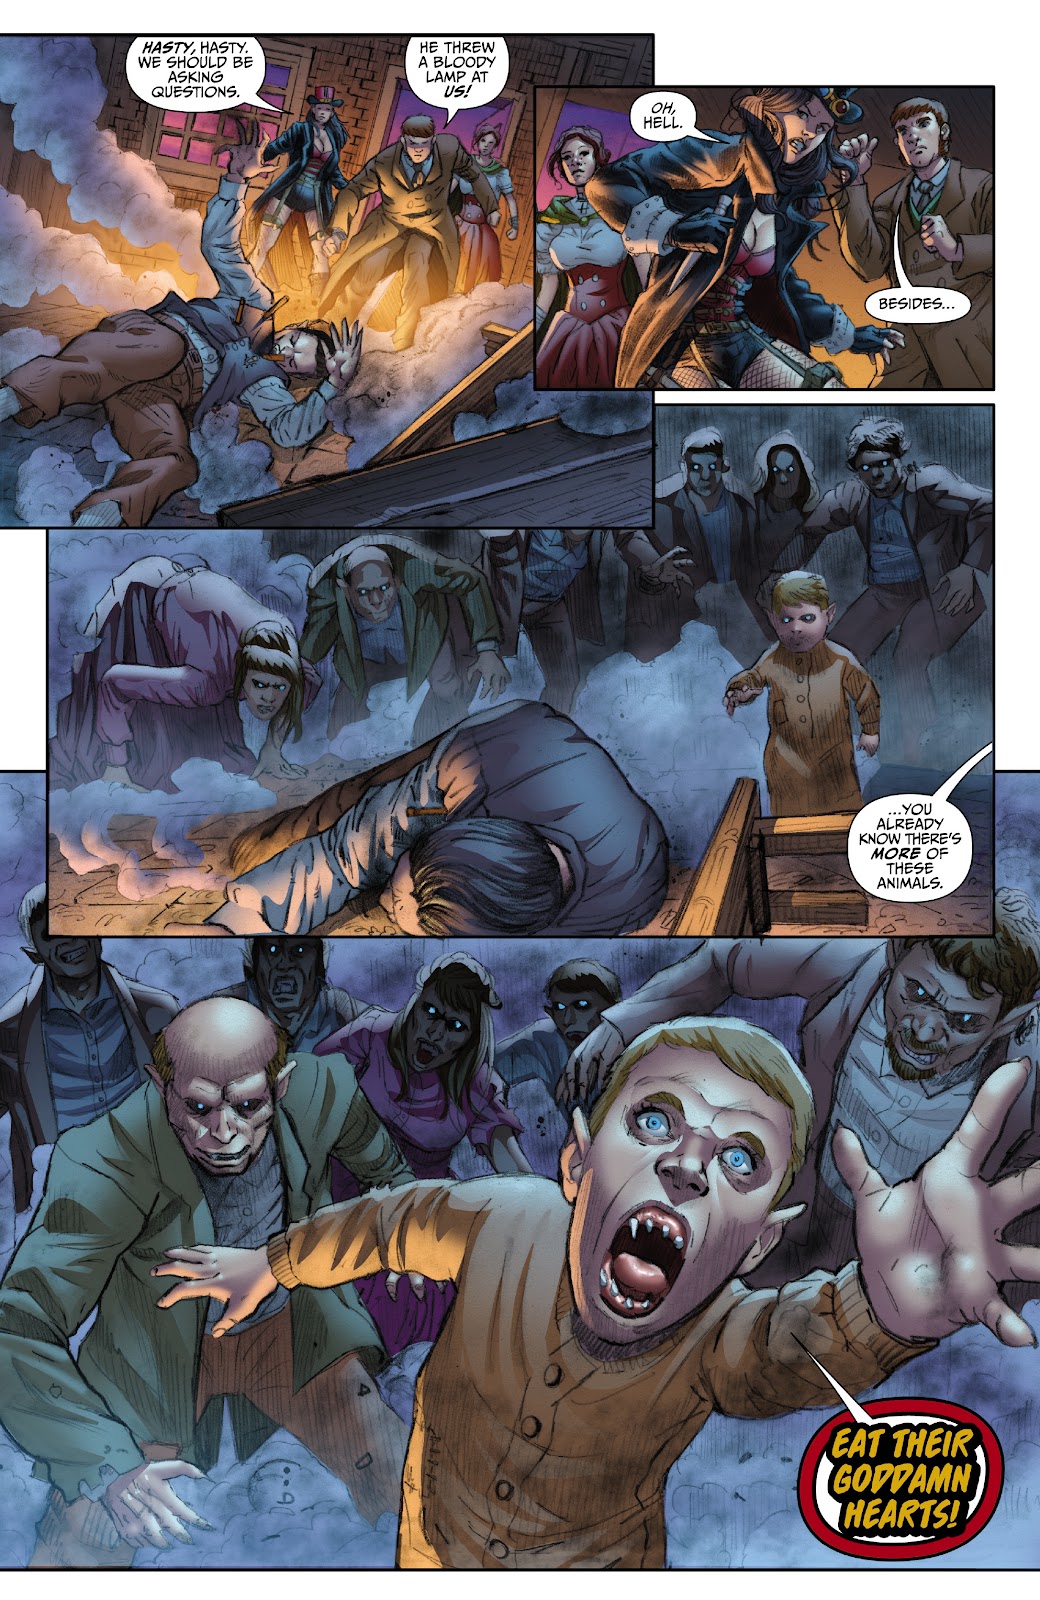 Van Helsing: Vampire Hunter issue 1 - Page 16